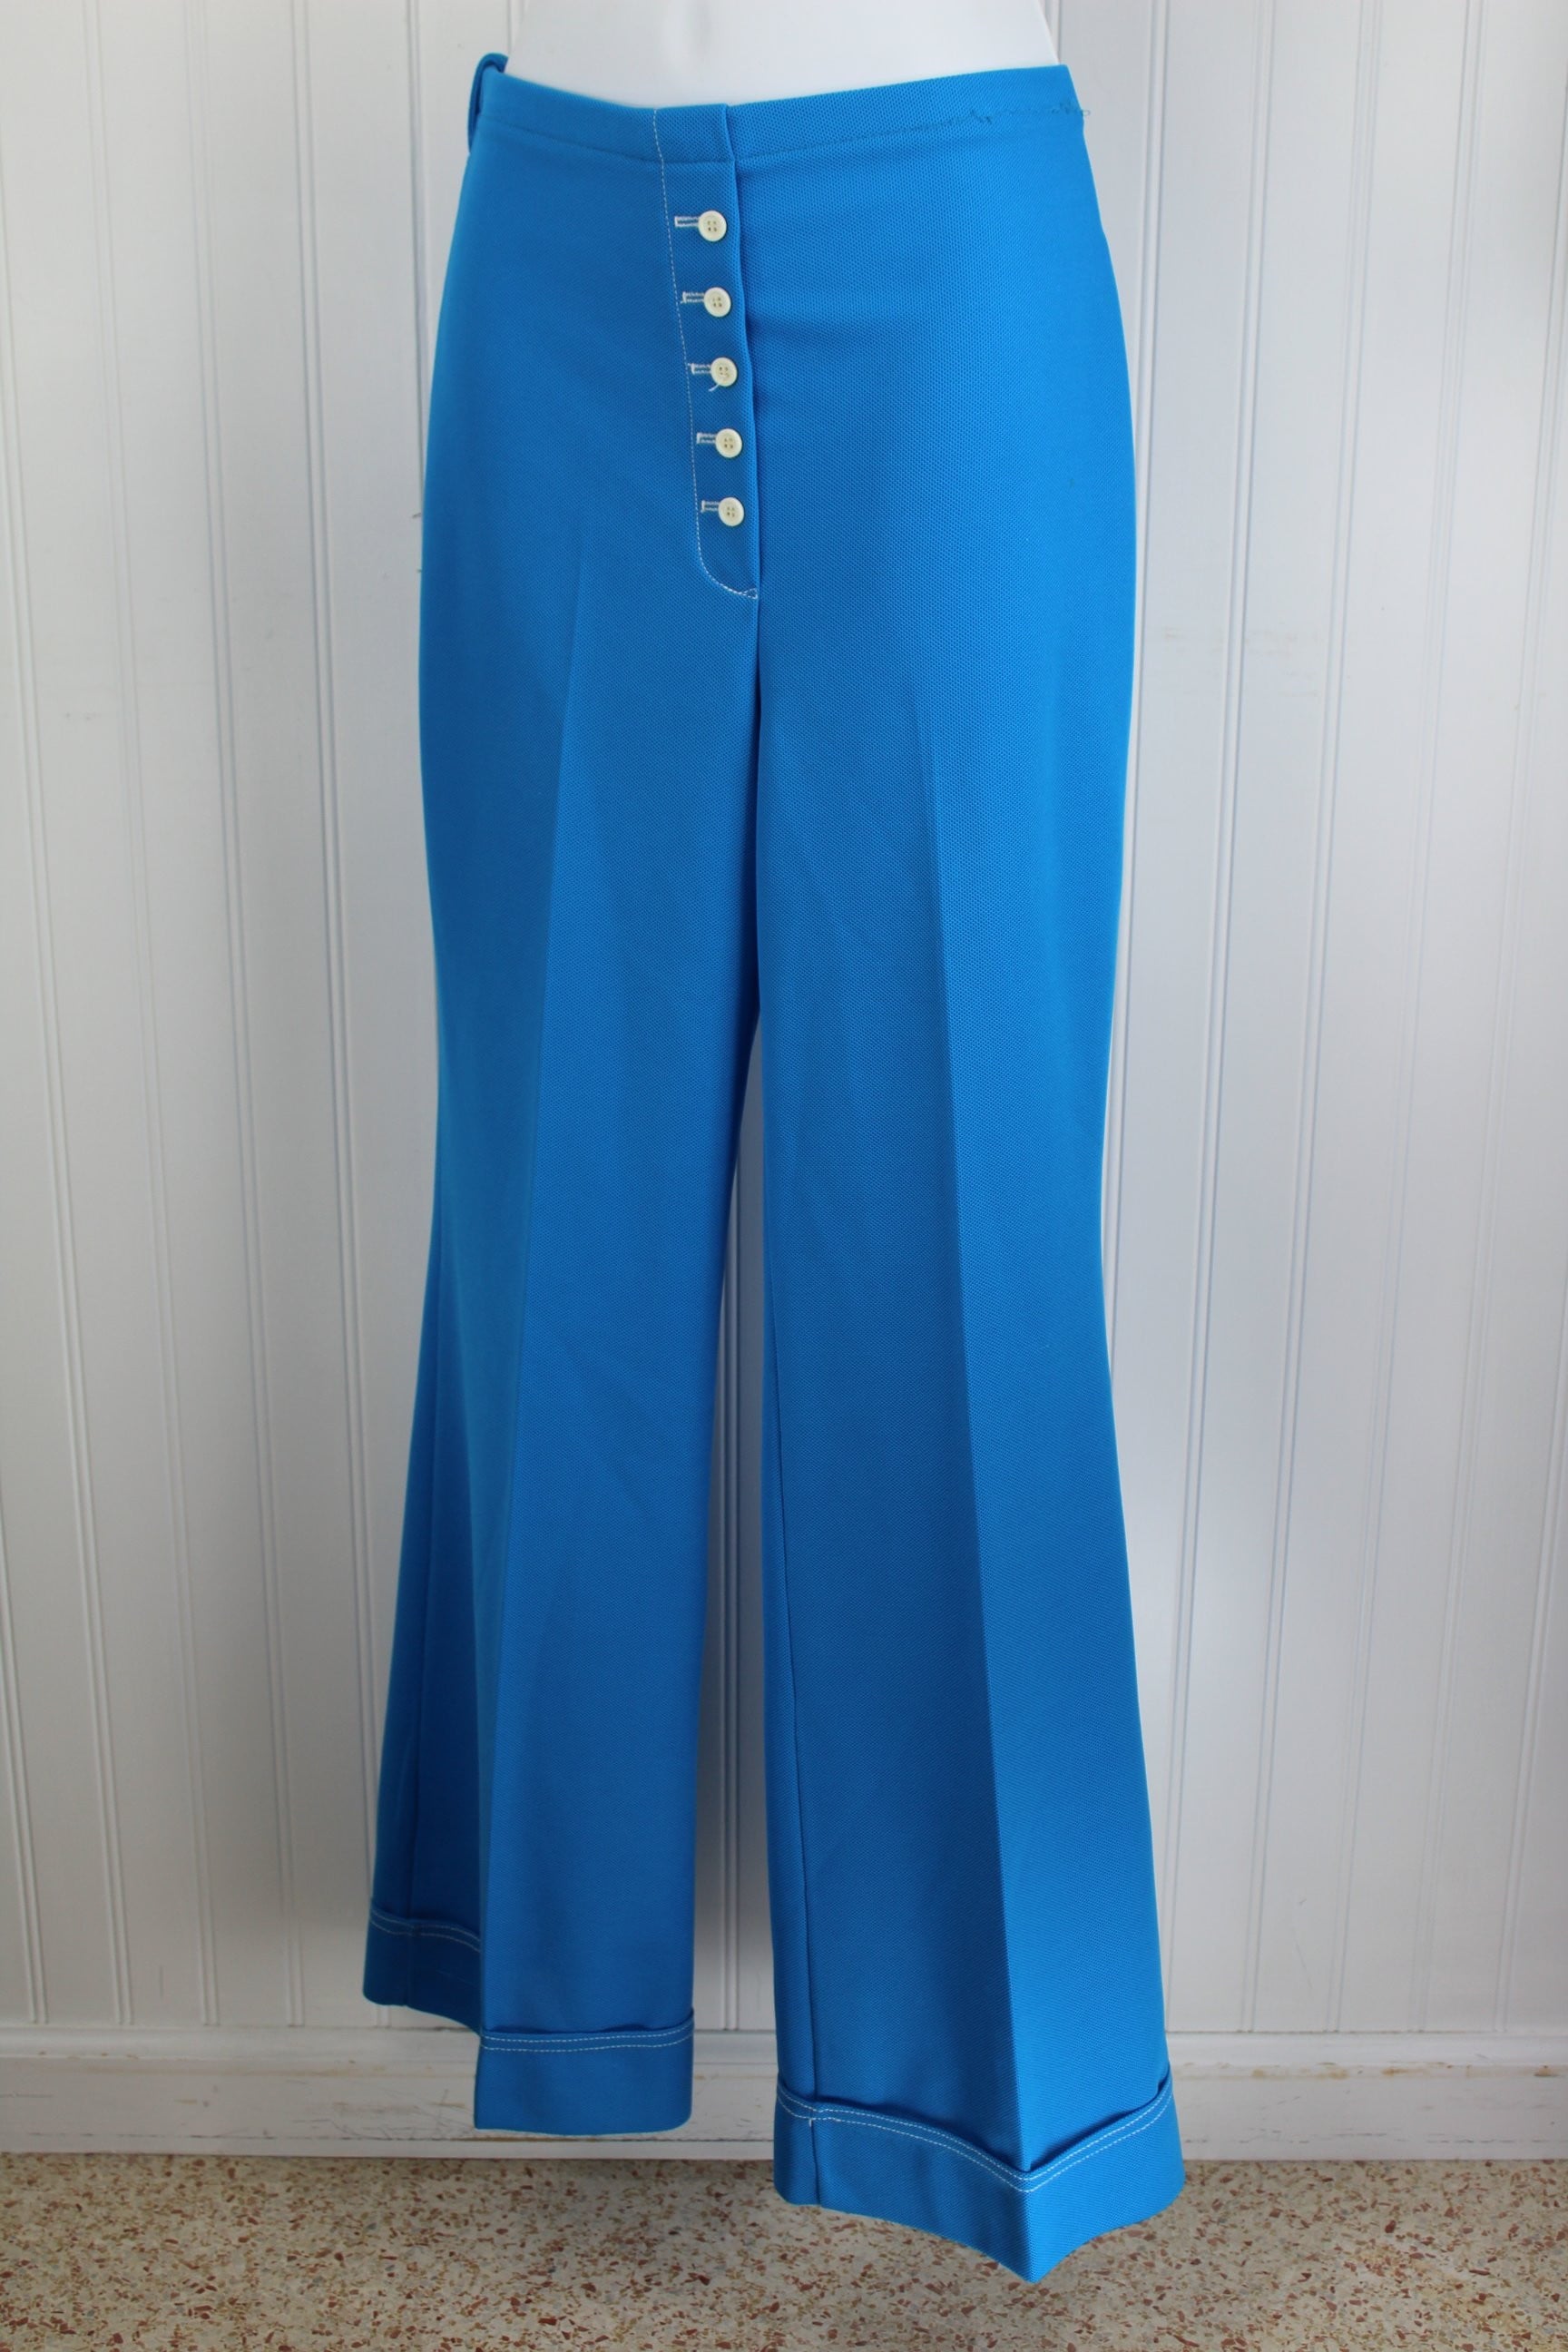 Vintage Jantzen Nautical Pants Suit 1960s - Button Tab Flare Pants - Long Sleeve Jacket fshionable